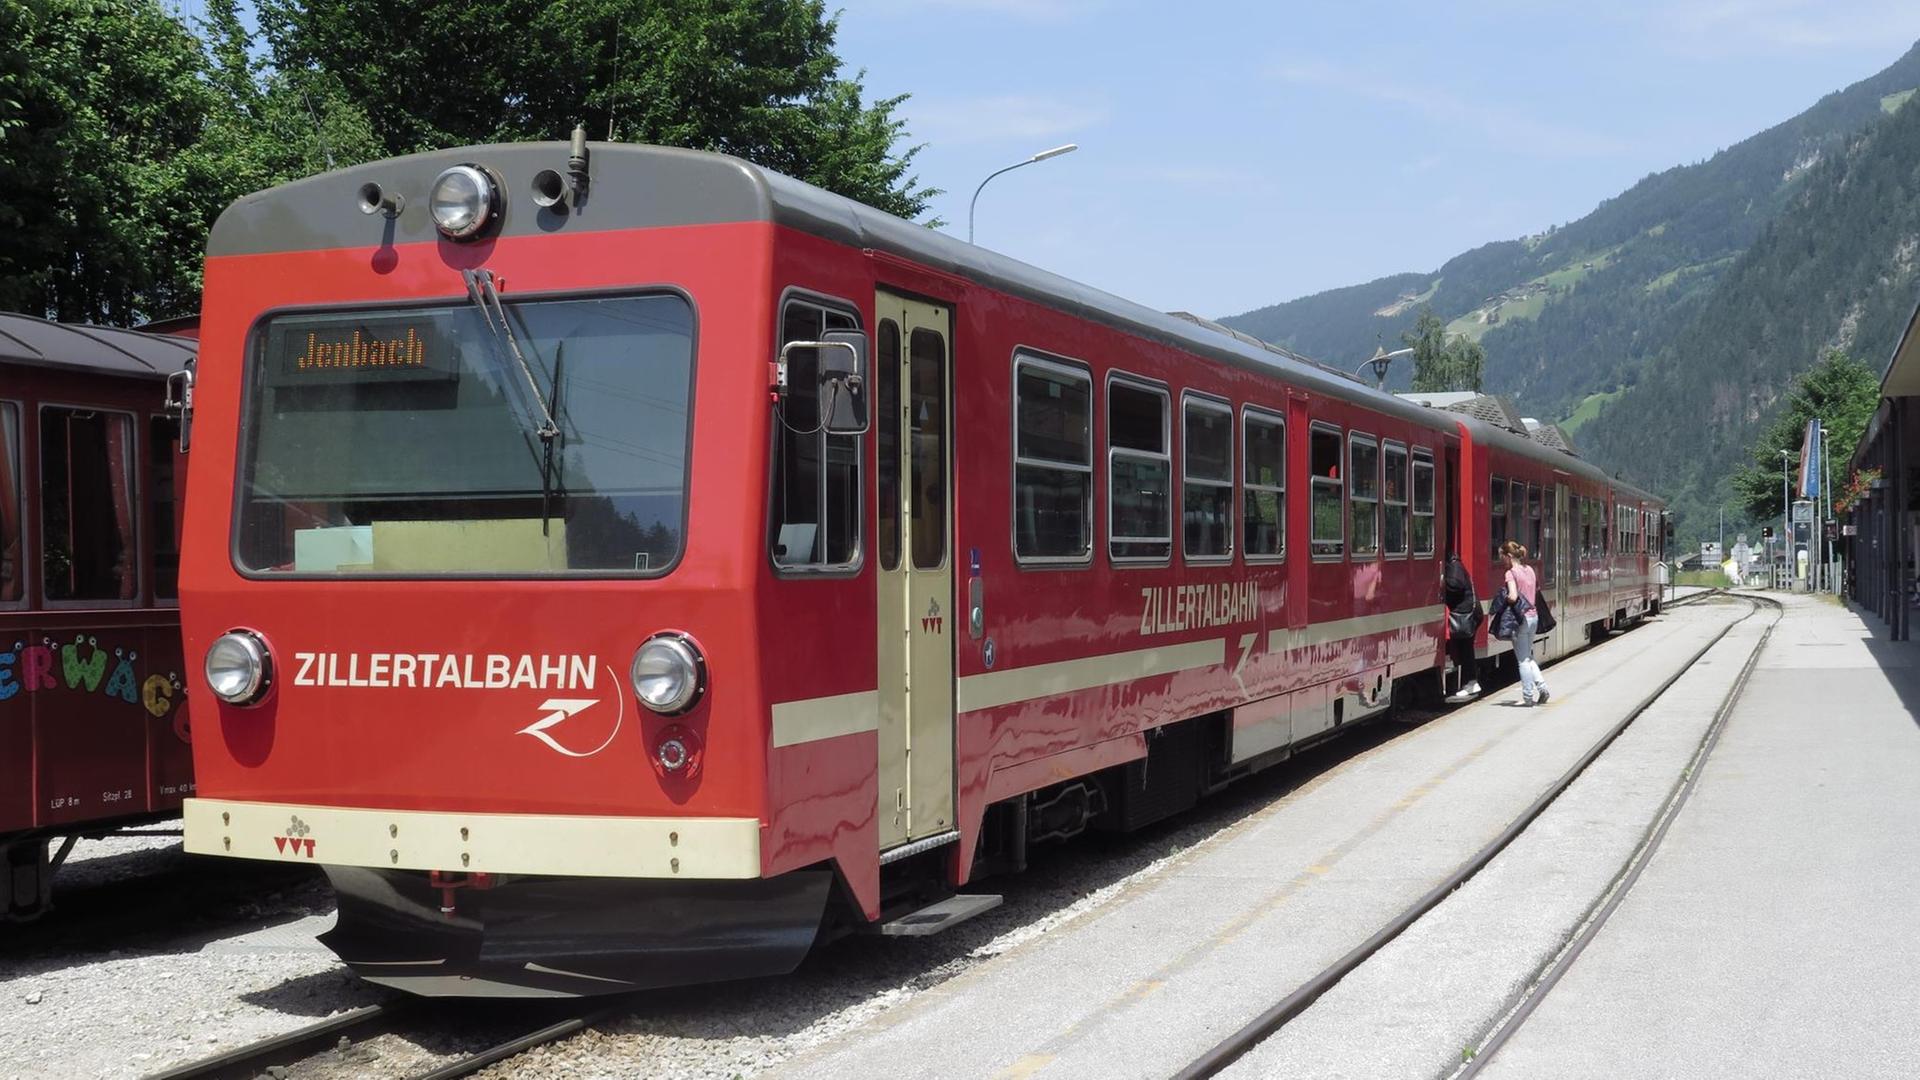 Ein Zug der Zillertalbahn in Tirol, Österreich in einem Bahnhof.